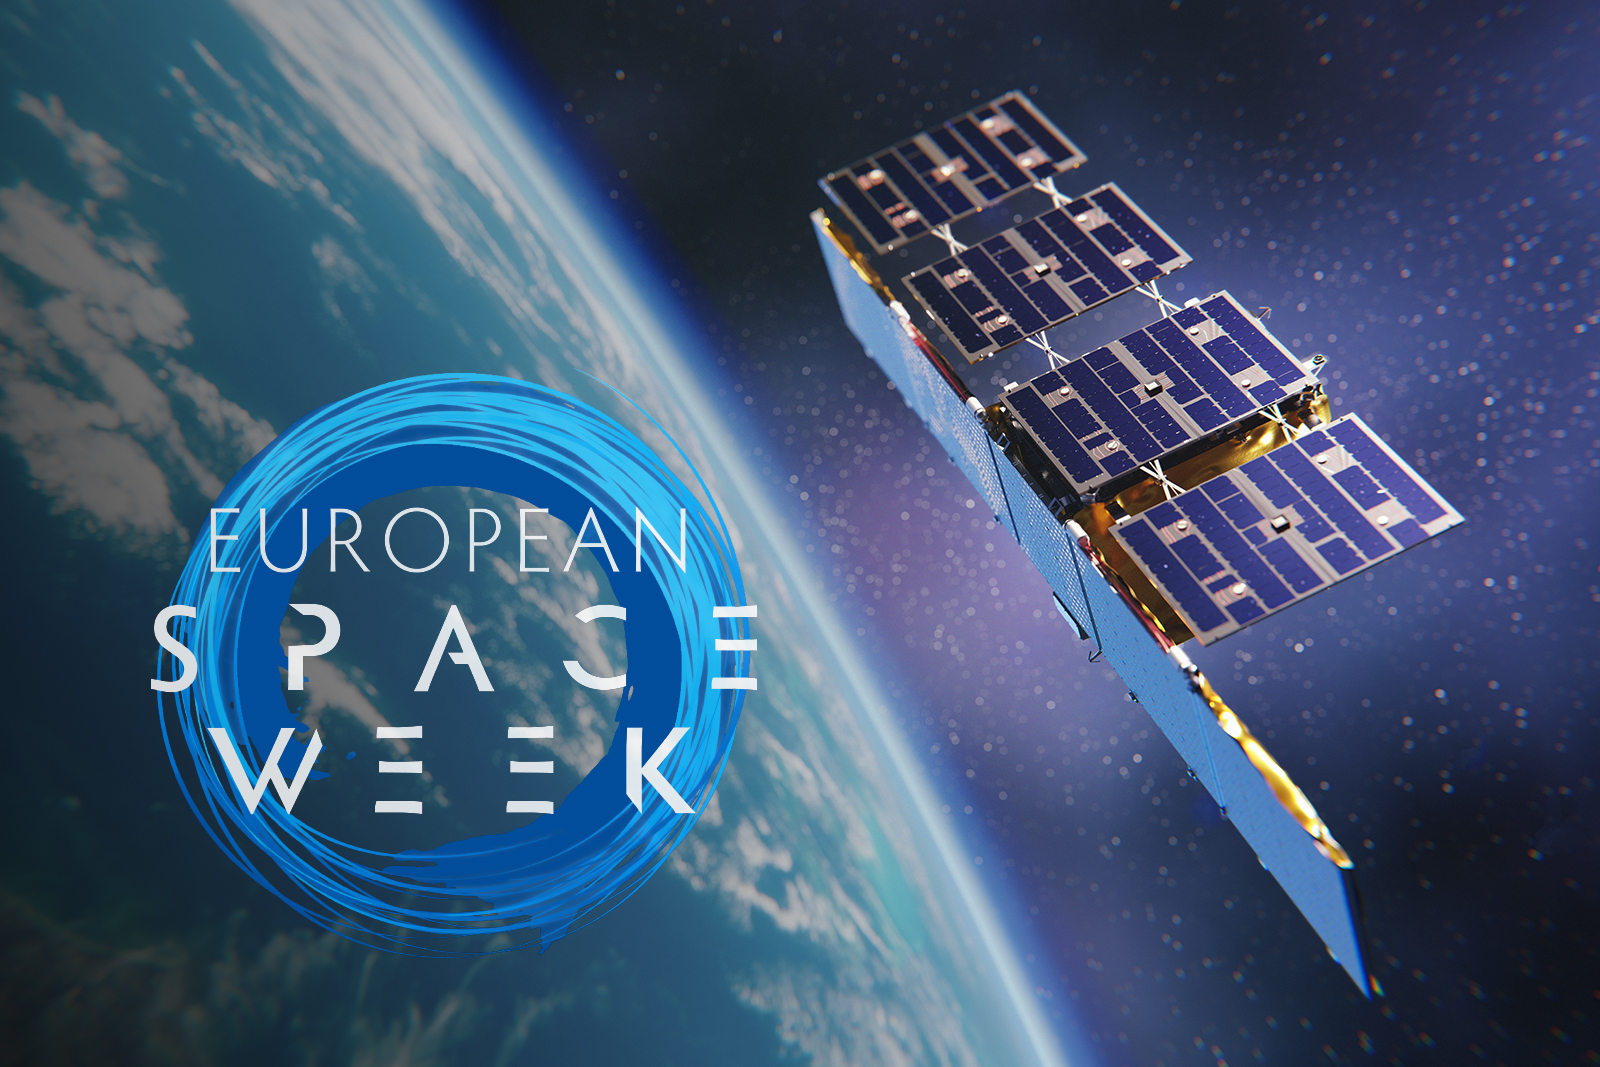 iceye-european-space-week-featured-image-cs